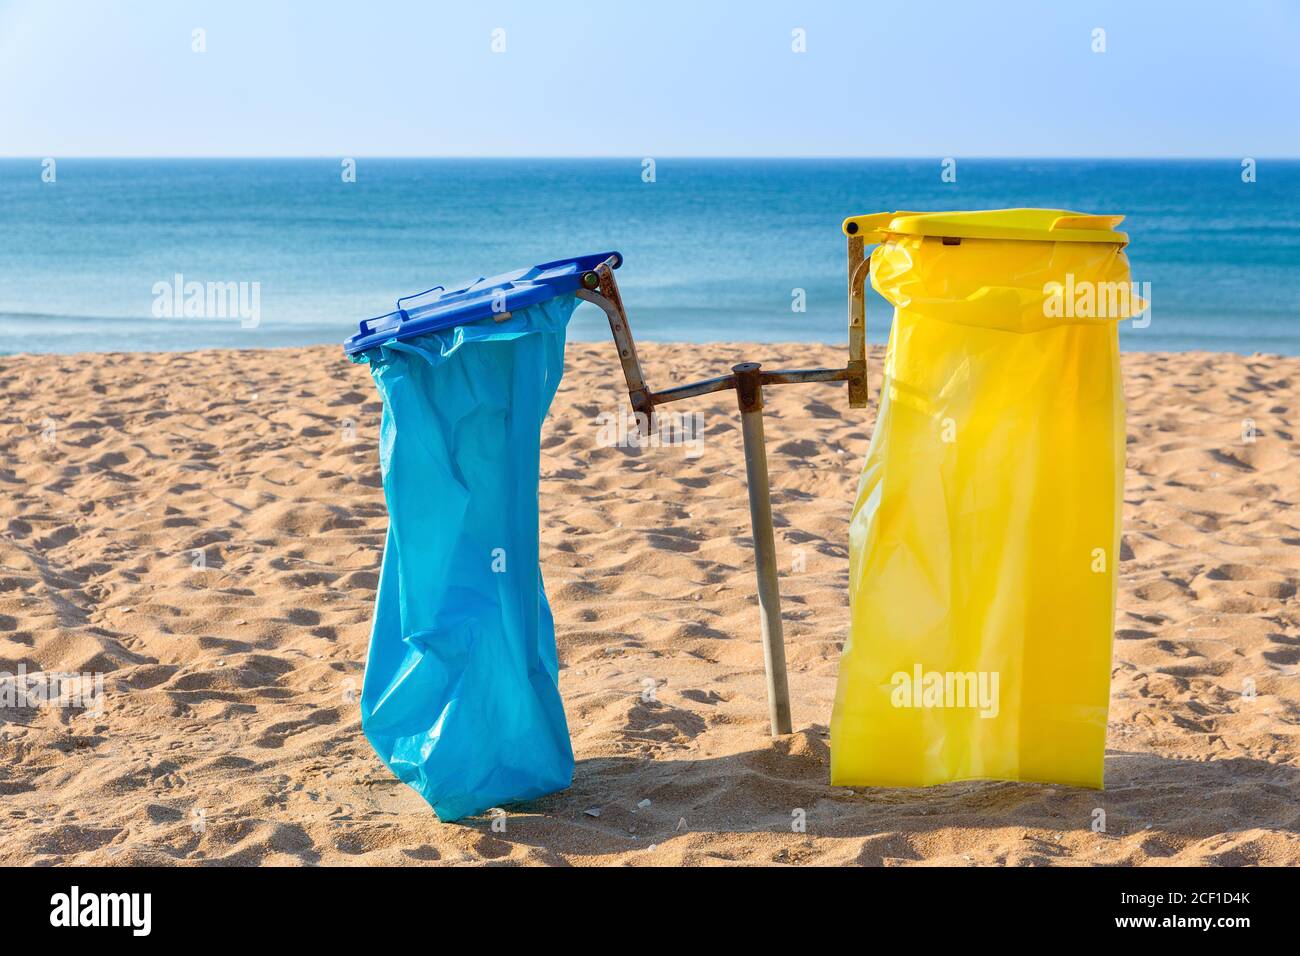 Bolsas de basura vacías en la playa de arena portuguesa con el mar azul Foto de stock